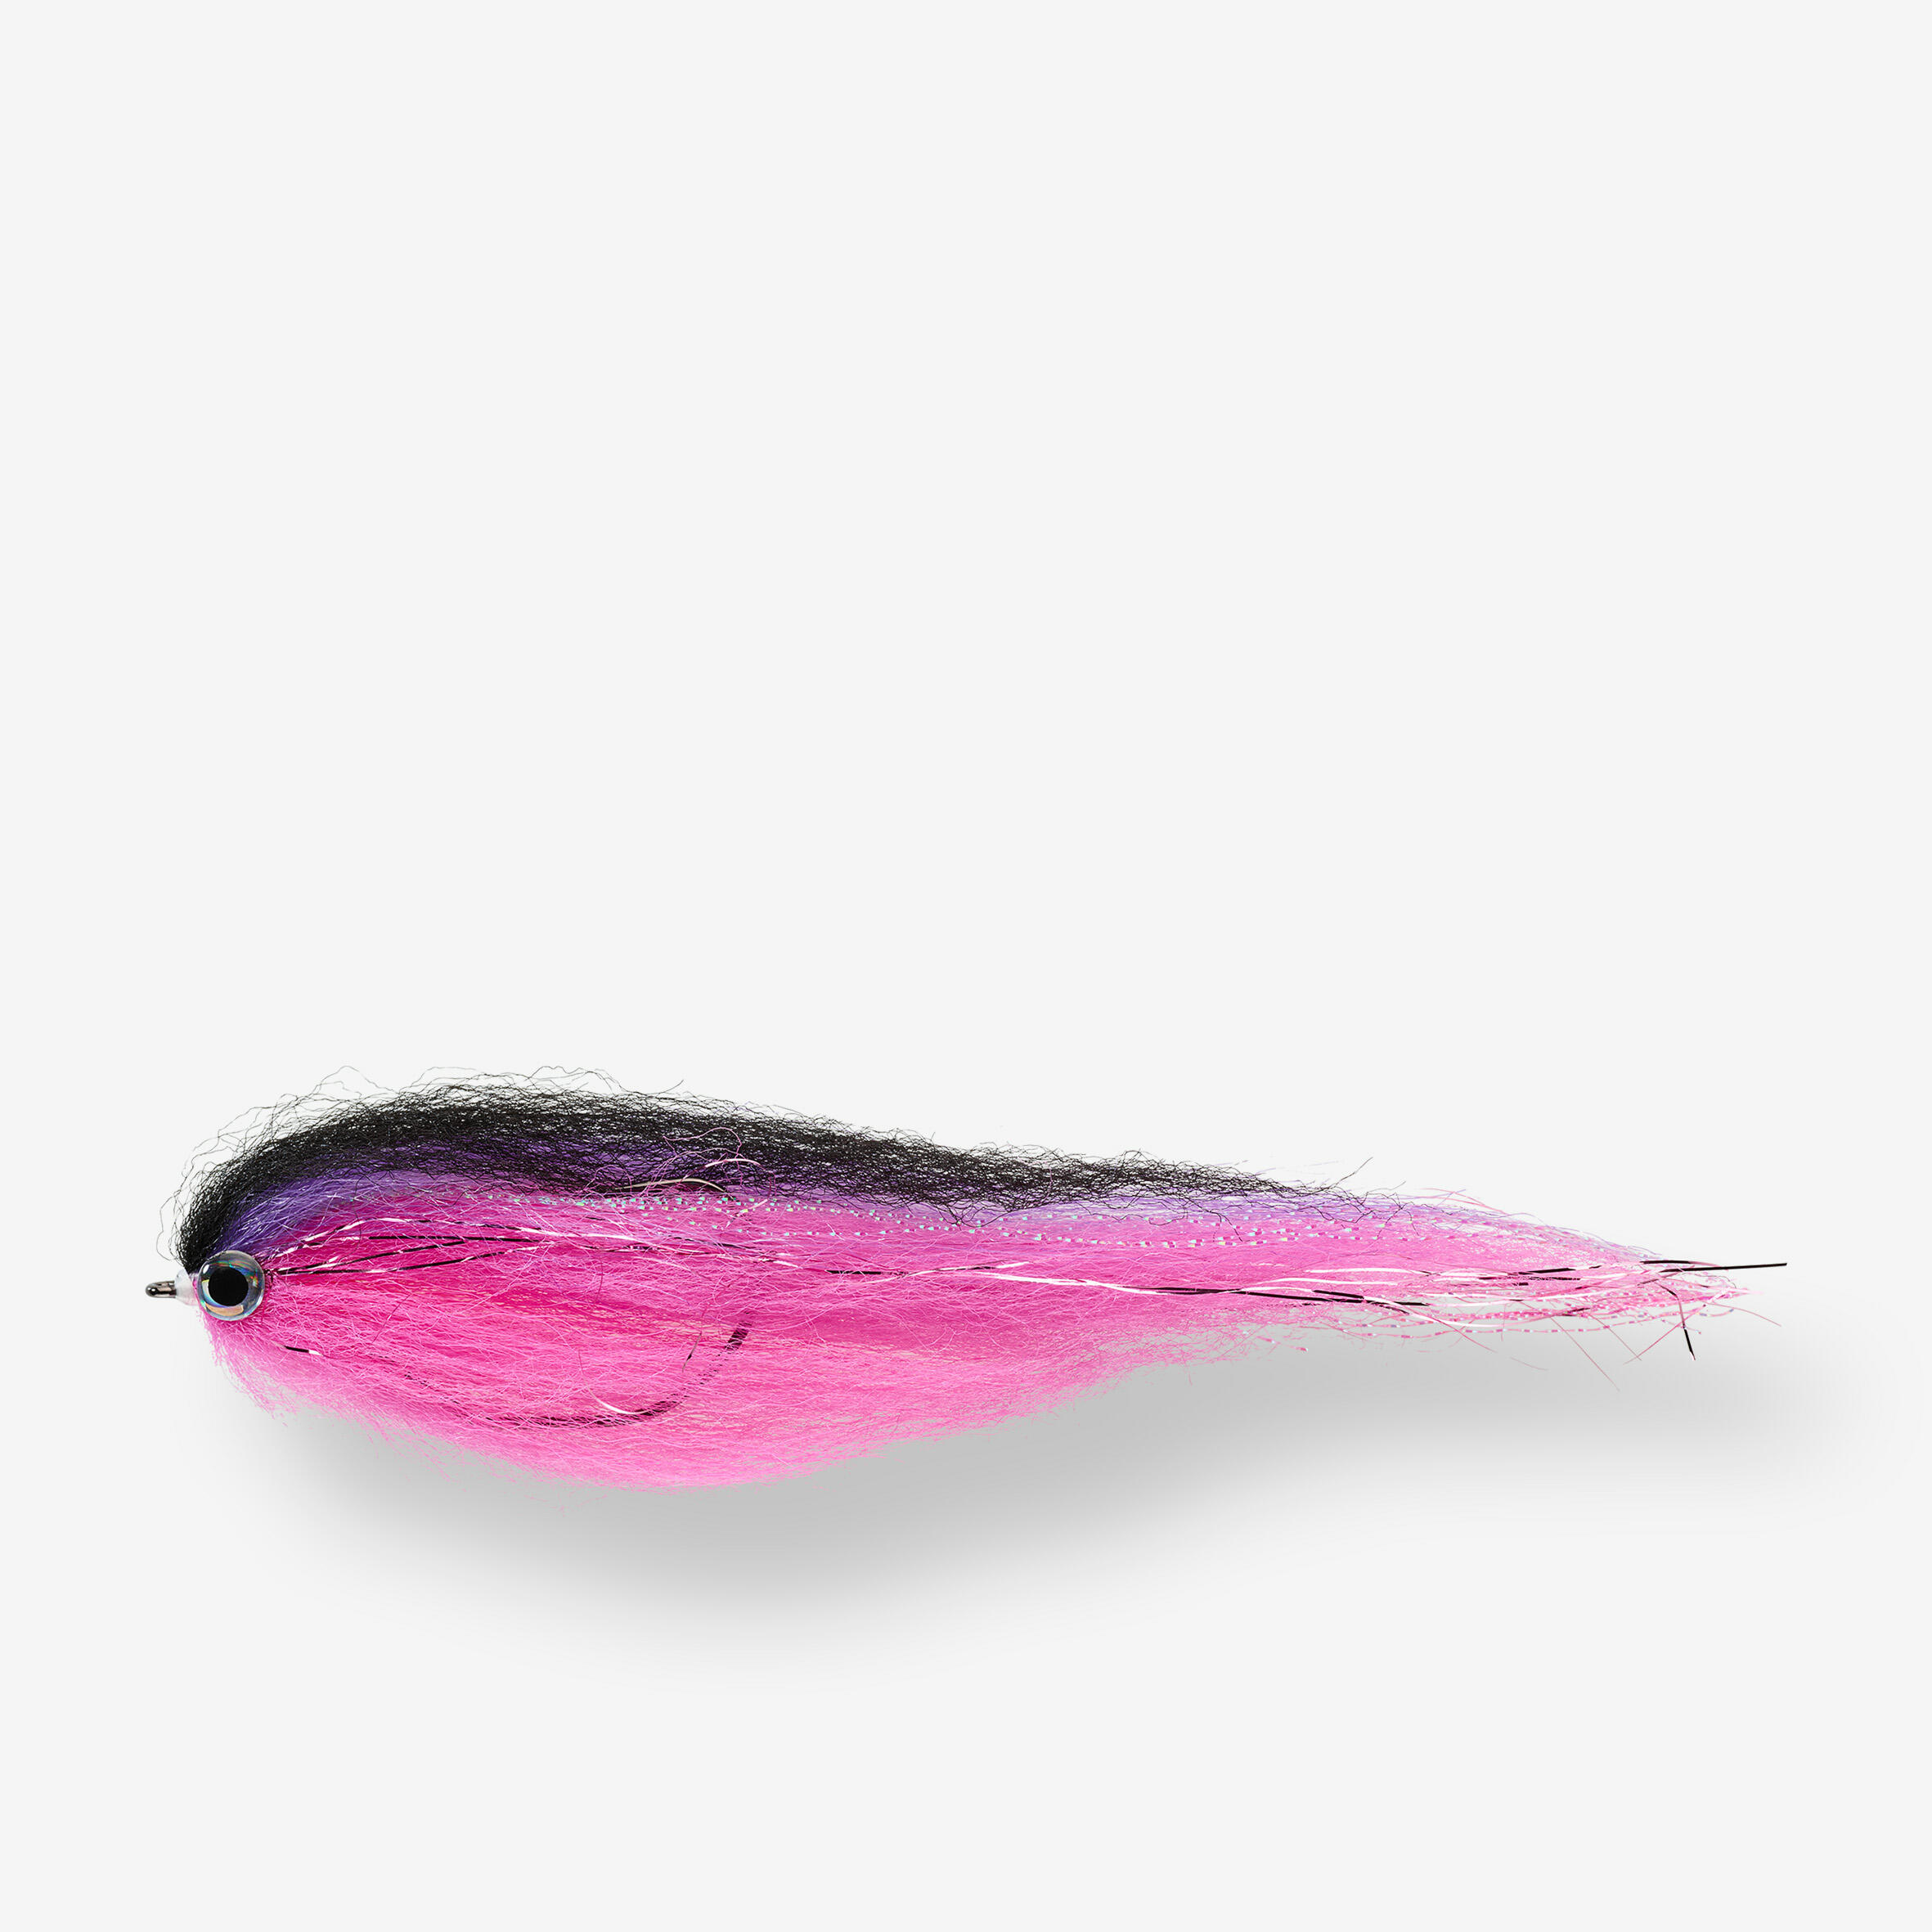 Streamer szczupakowy Caperlan Predator HRK71 fioletowo-różowy